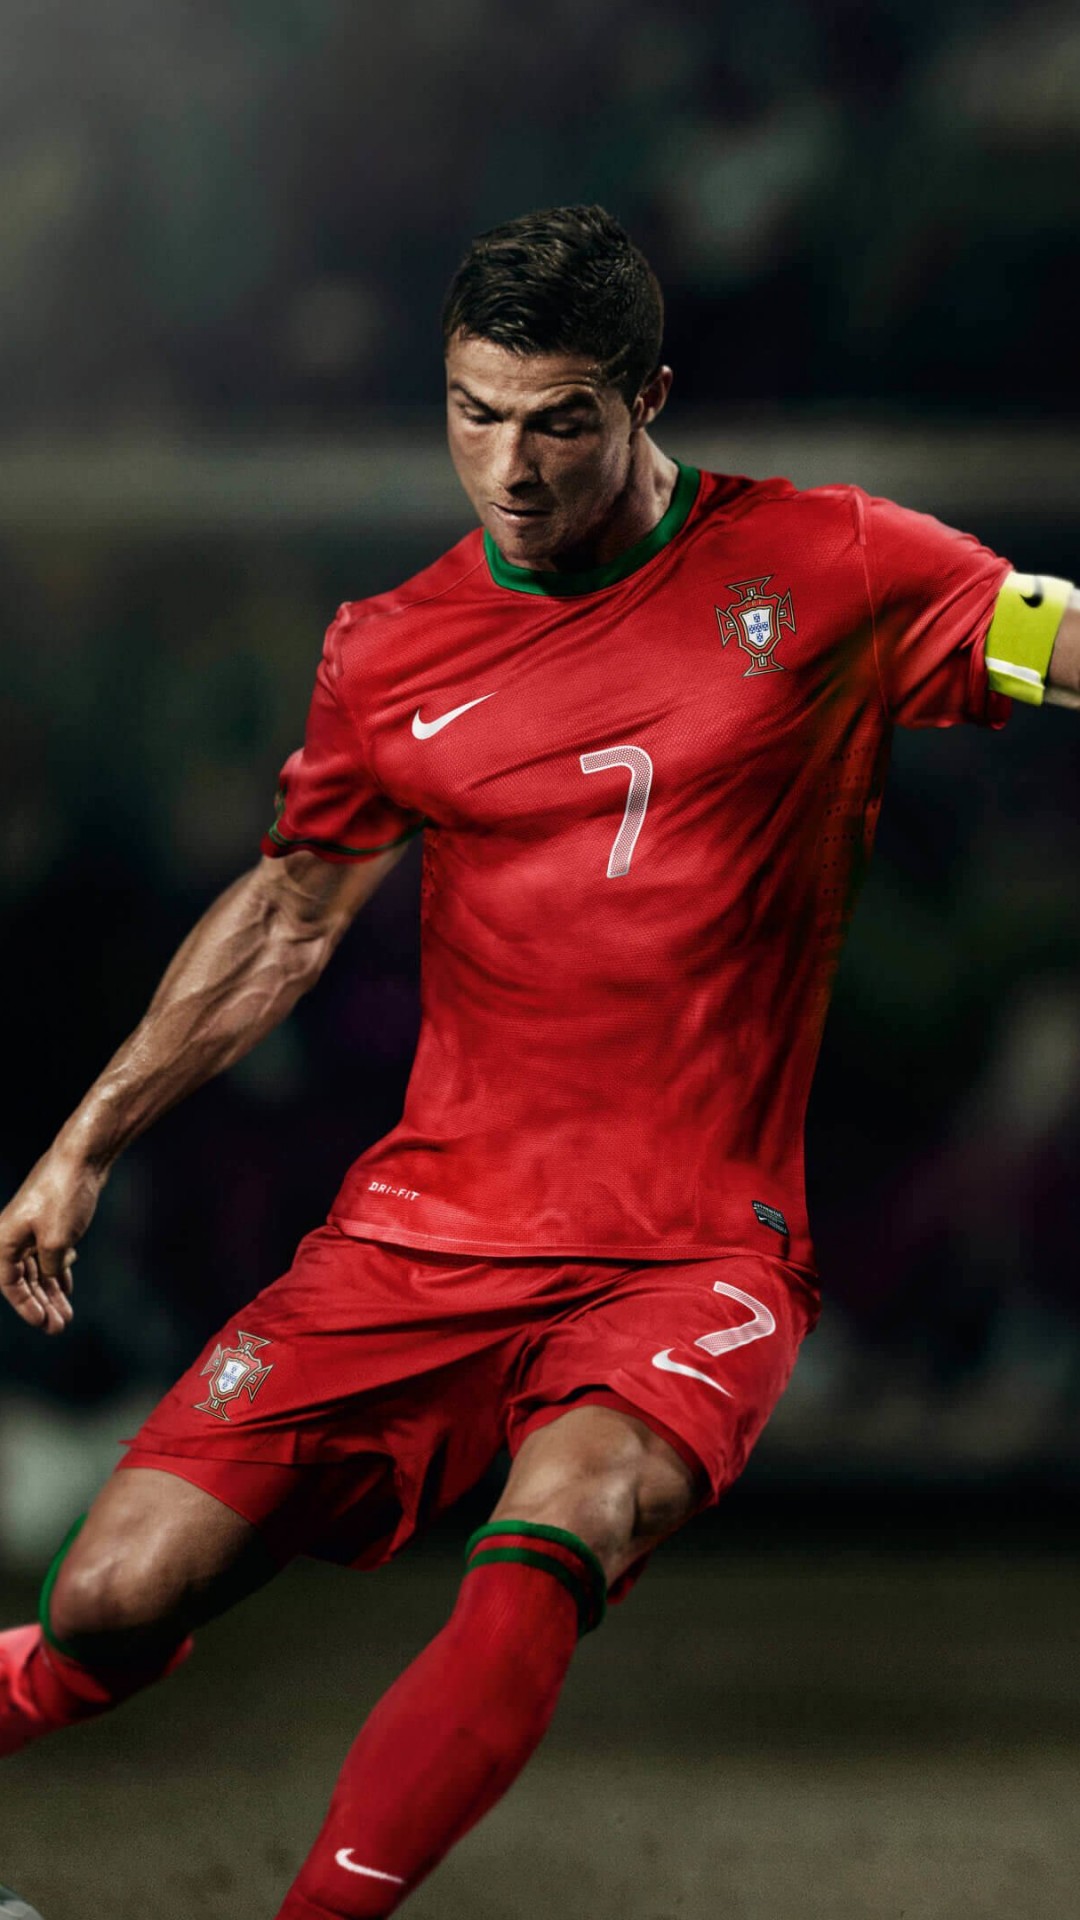 Cristiano Ronaldo In Portugal Jersey Wallpaper for SAMSUNG Galaxy S4